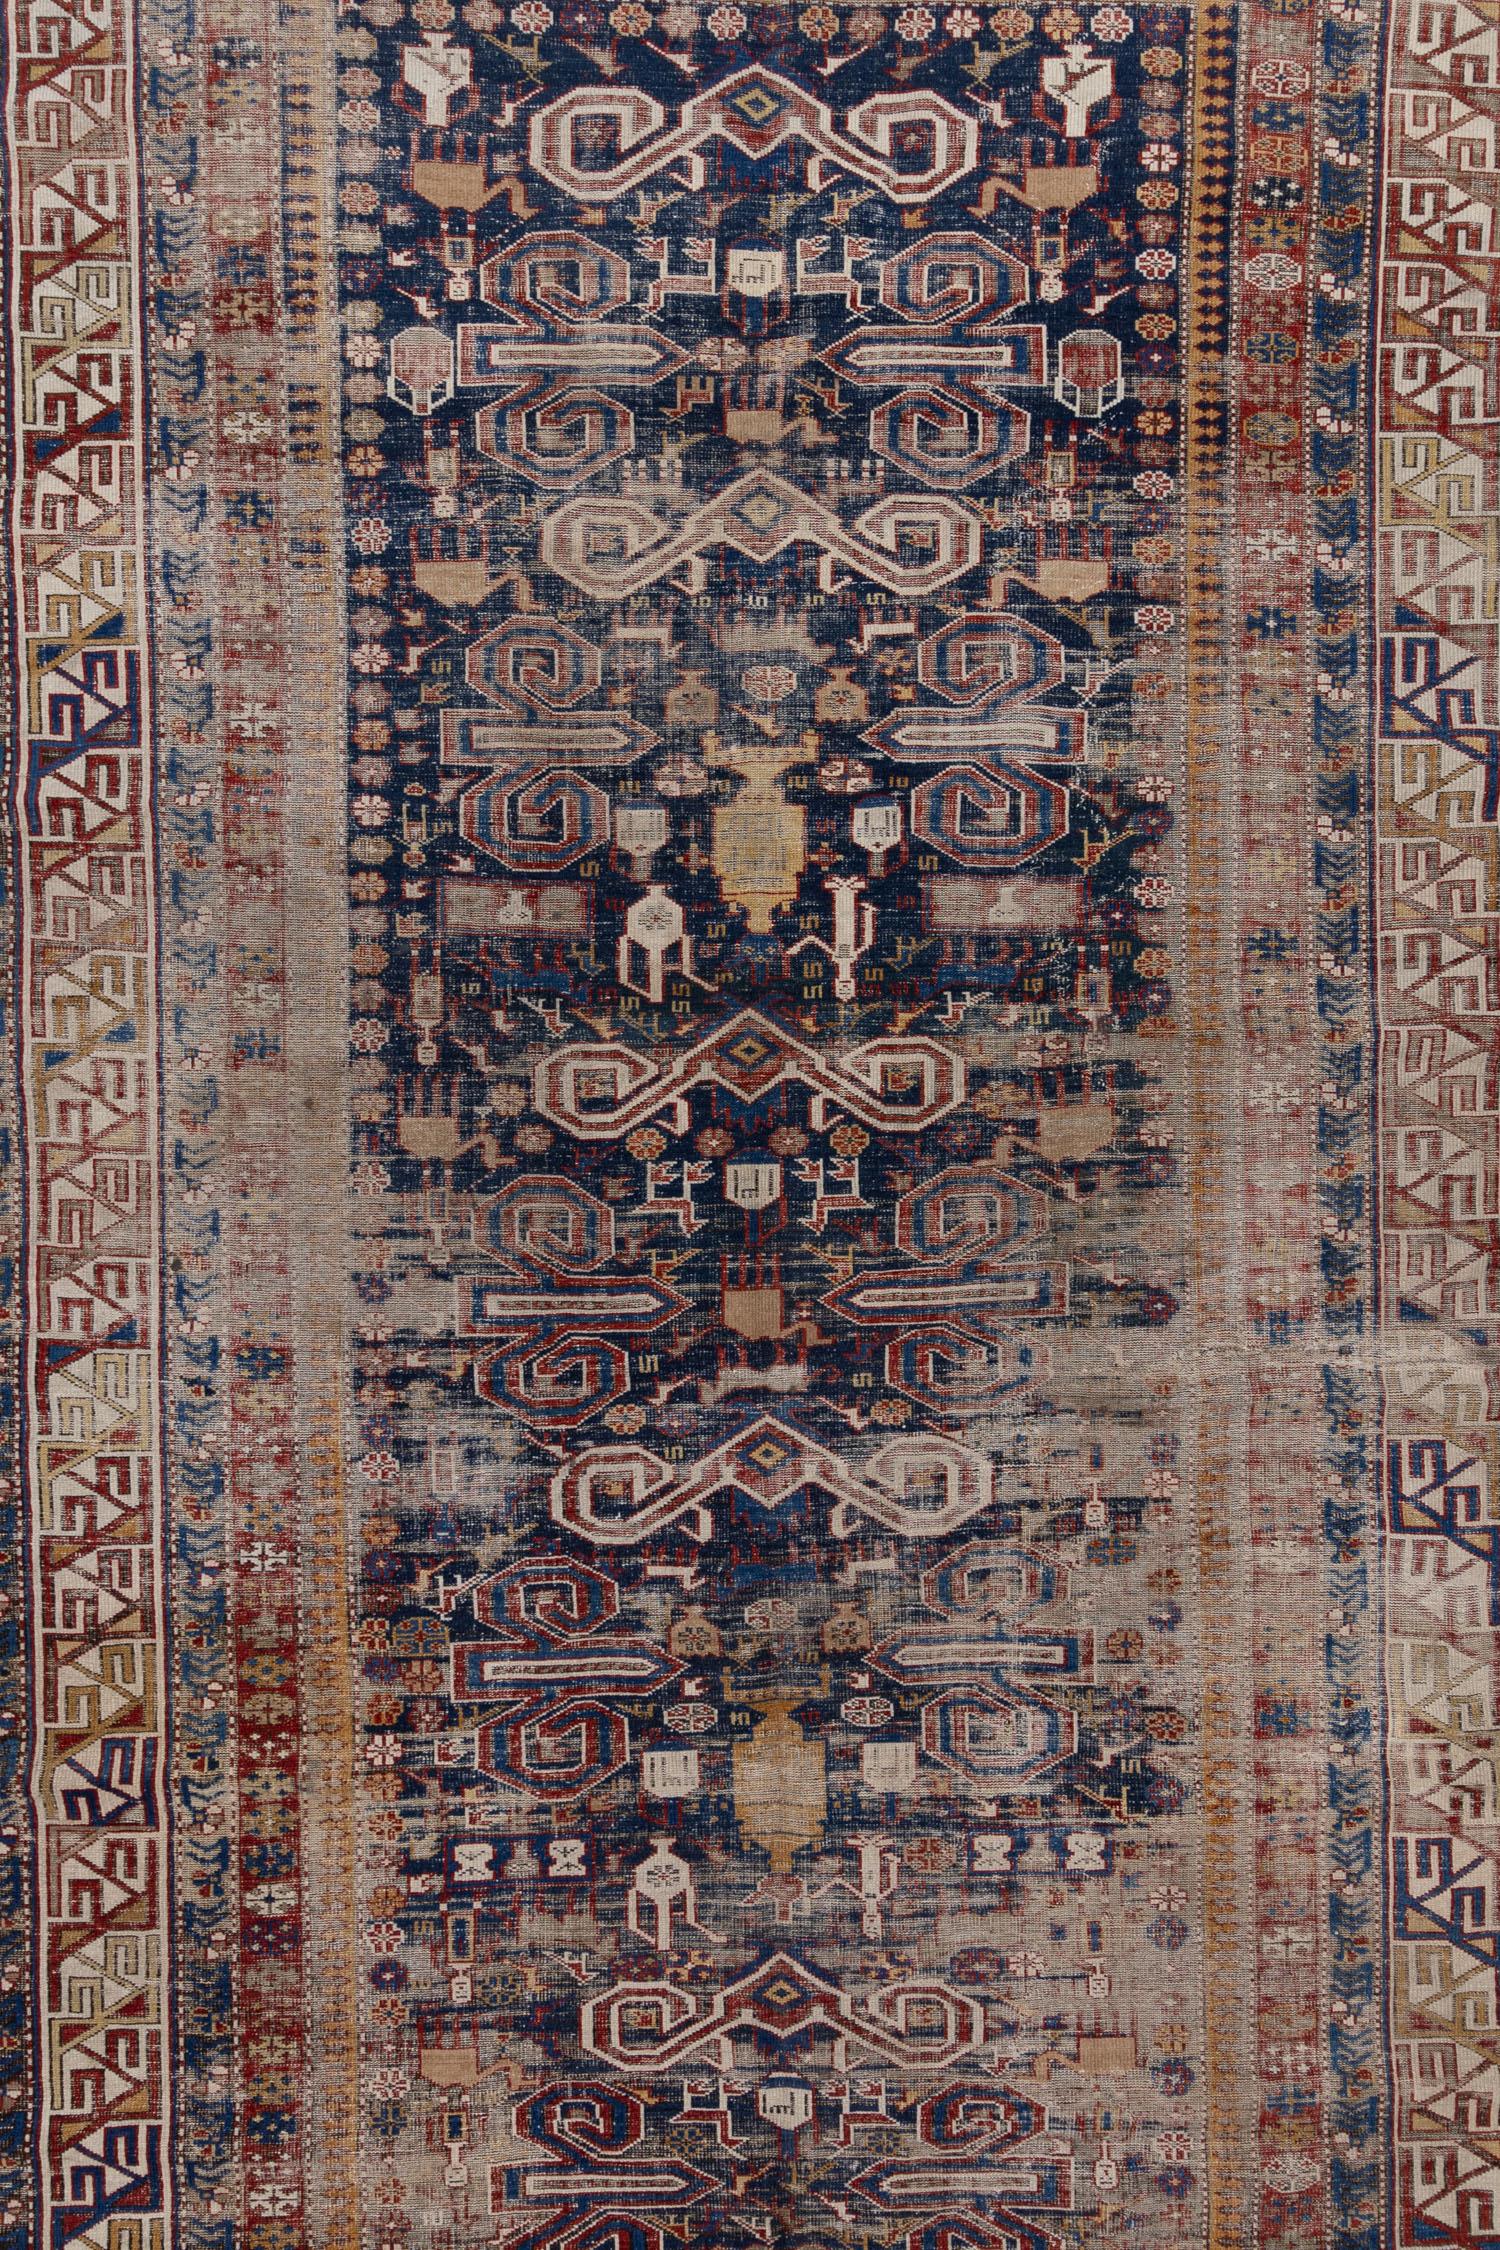 Magnifique tapis caucasien Shirvan de la fin du 19e siècle, avec un champ bleu profond, qui possède une histoire et une âme merveilleuses. Les tapis anciens de Shirvan, originaires de l'ancienne ville de Shirvan, dans l'Iran d'aujourd'hui, sont